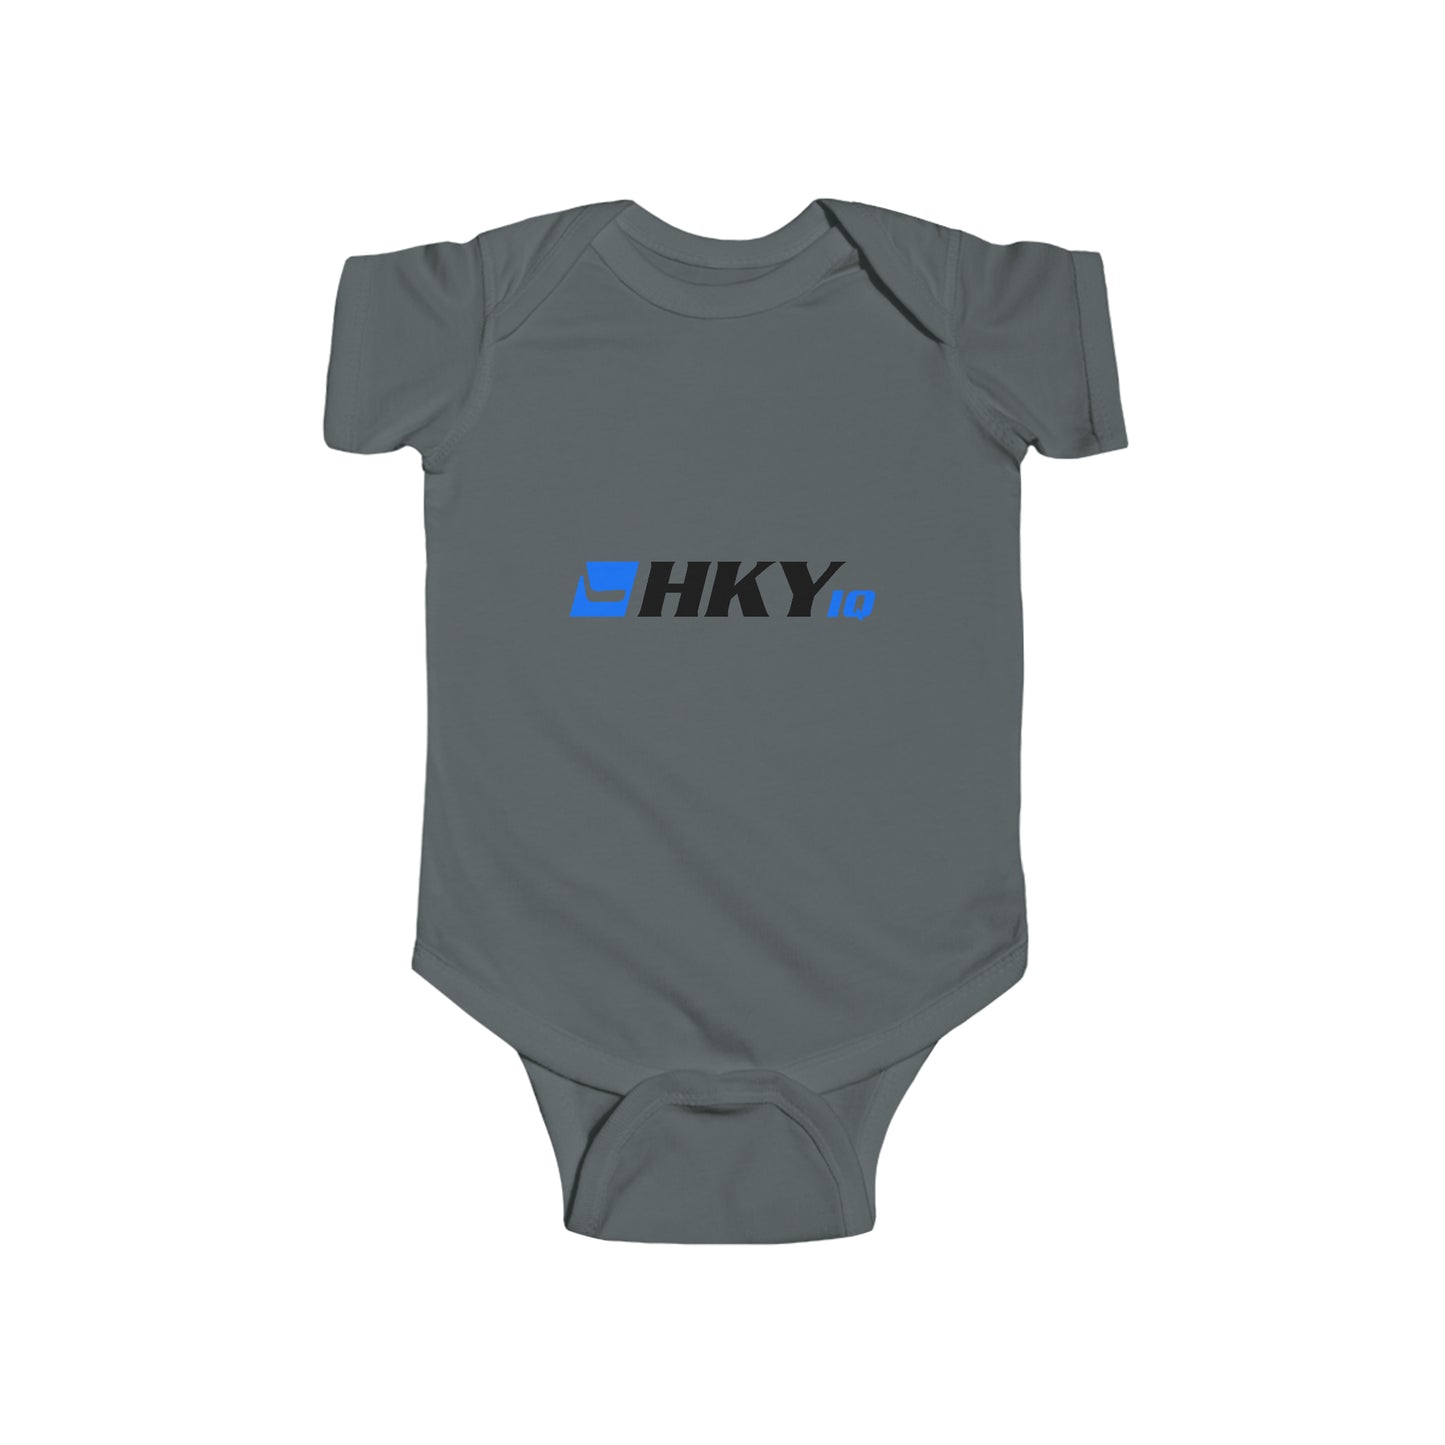 HKY IQ Infant Fine Jersey Bodysuit